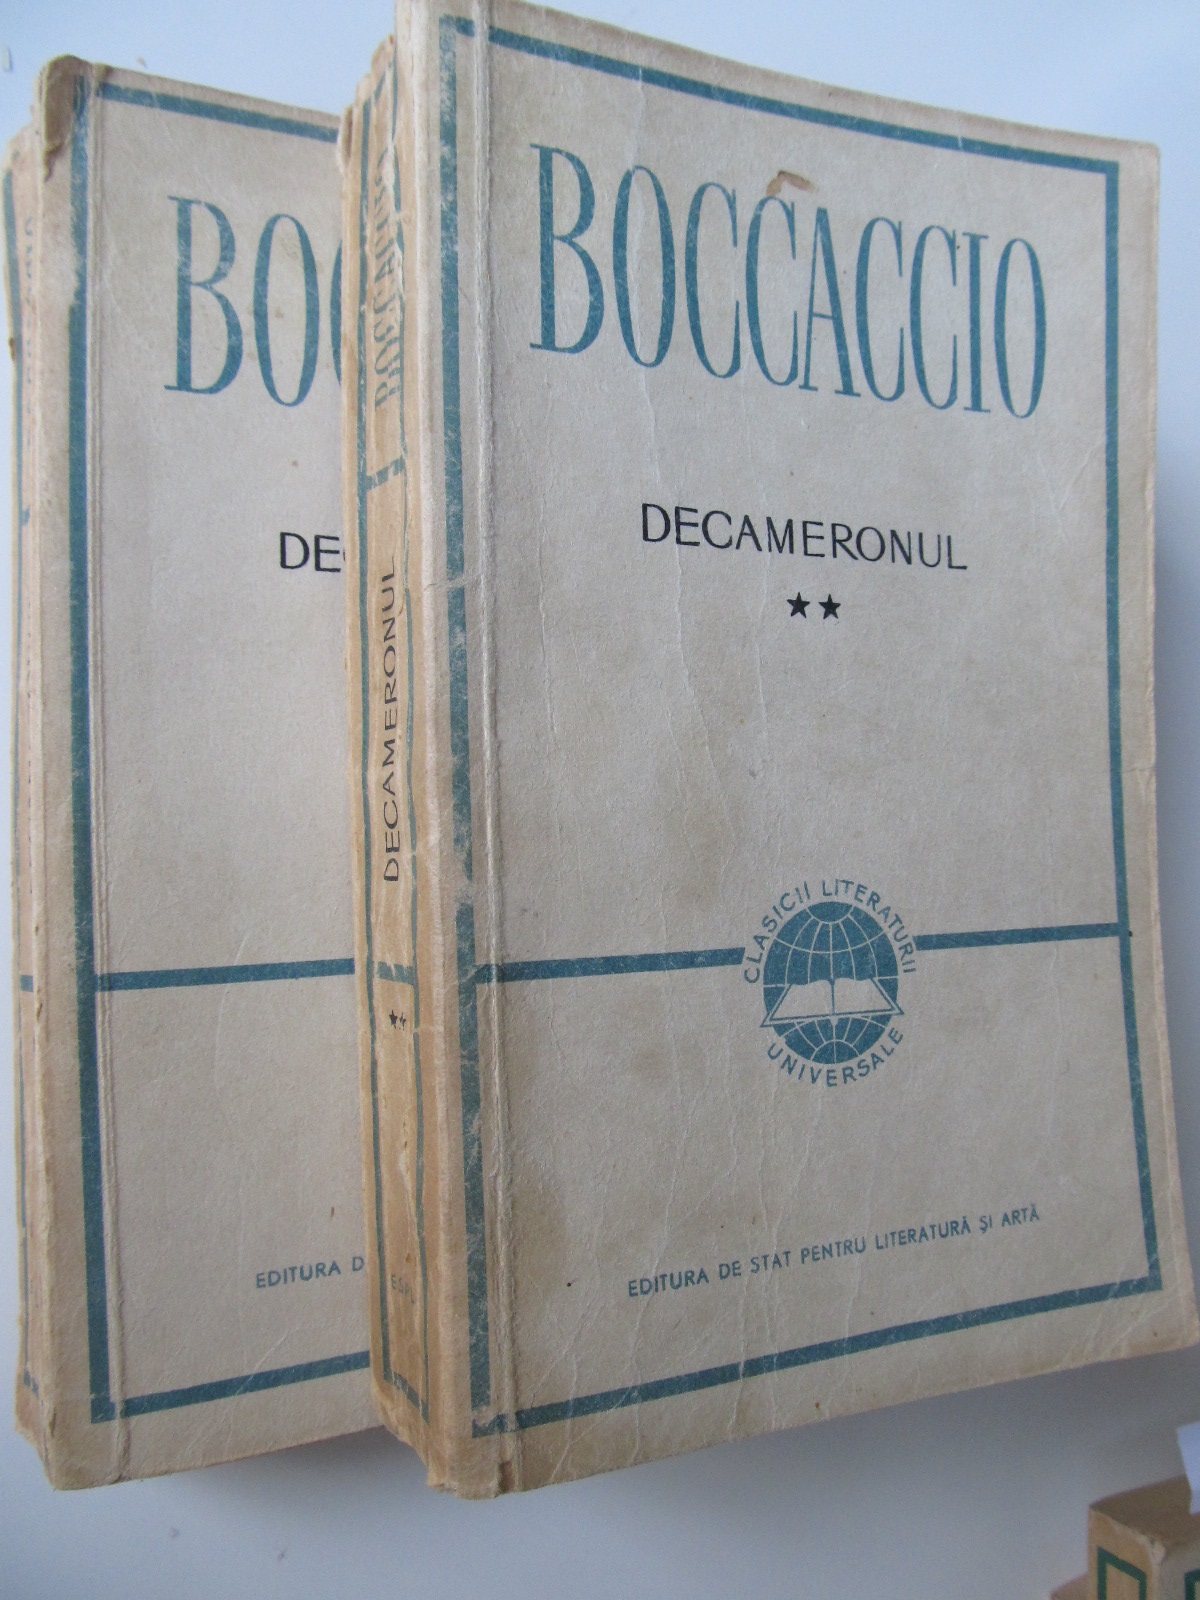 Decameronul (2 vol.) - Boccaccio | Detalii carte